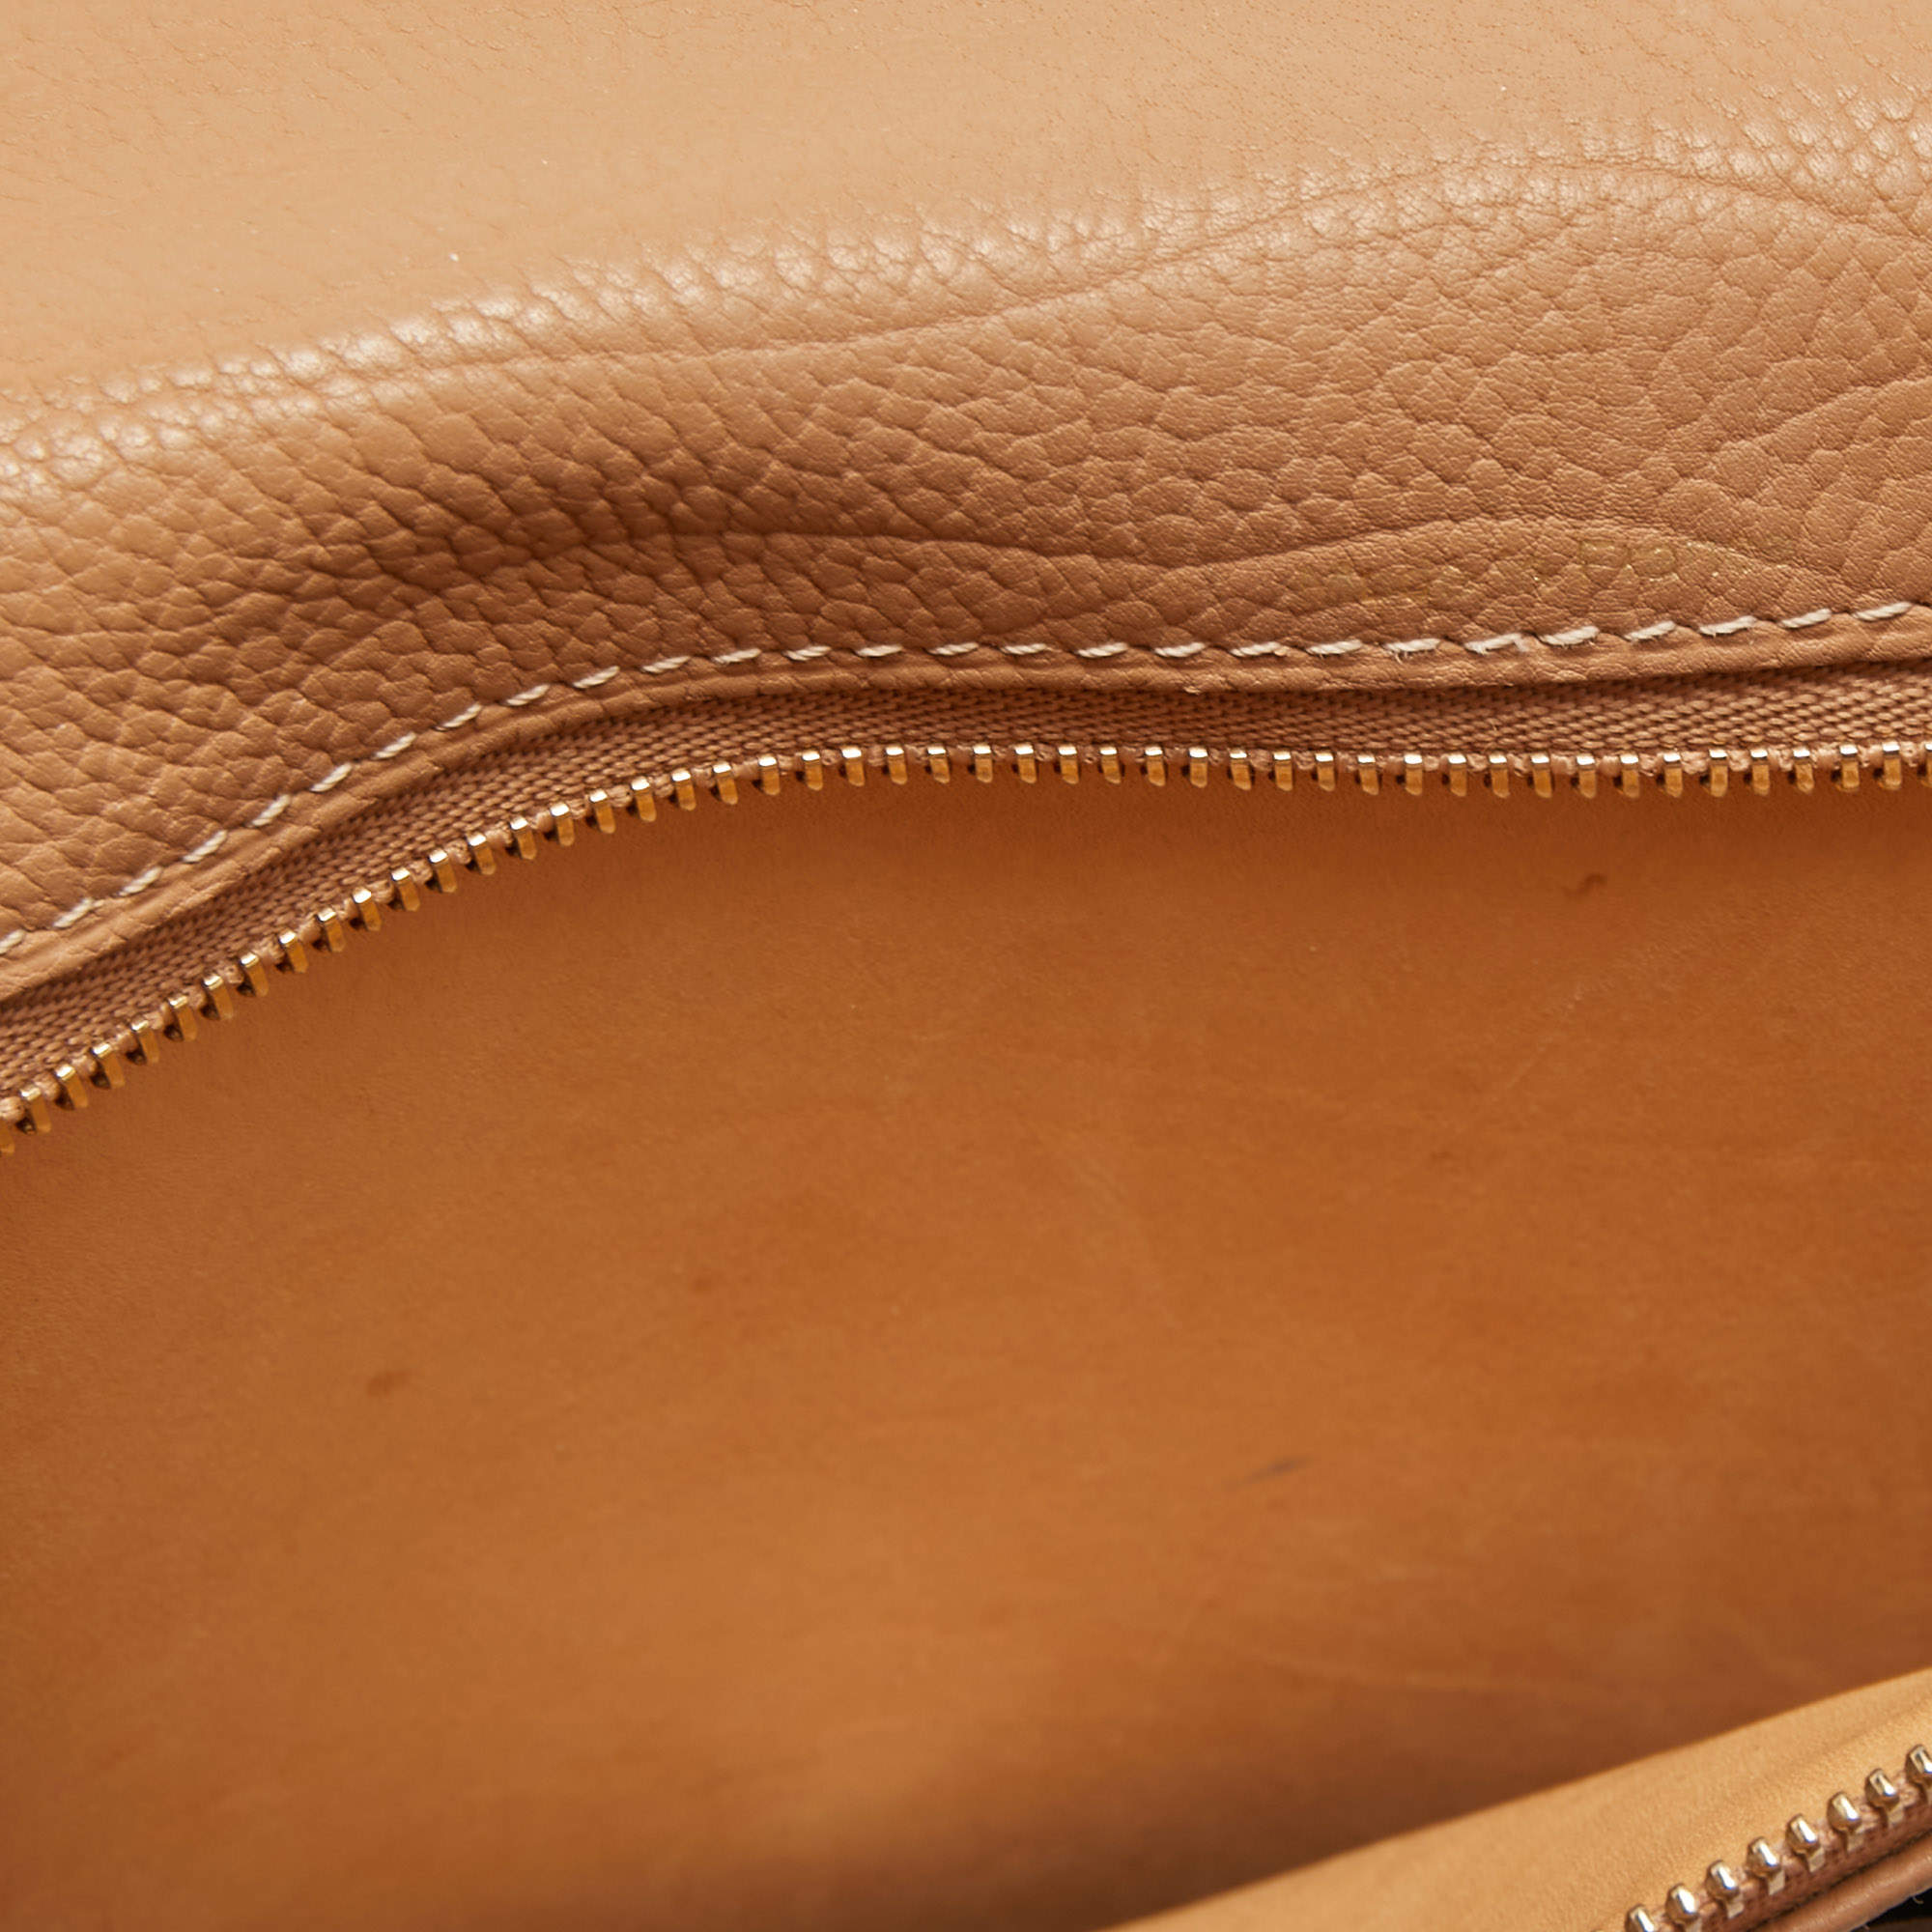 Tempête leather handbag Delvaux Camel in Leather - 34568096